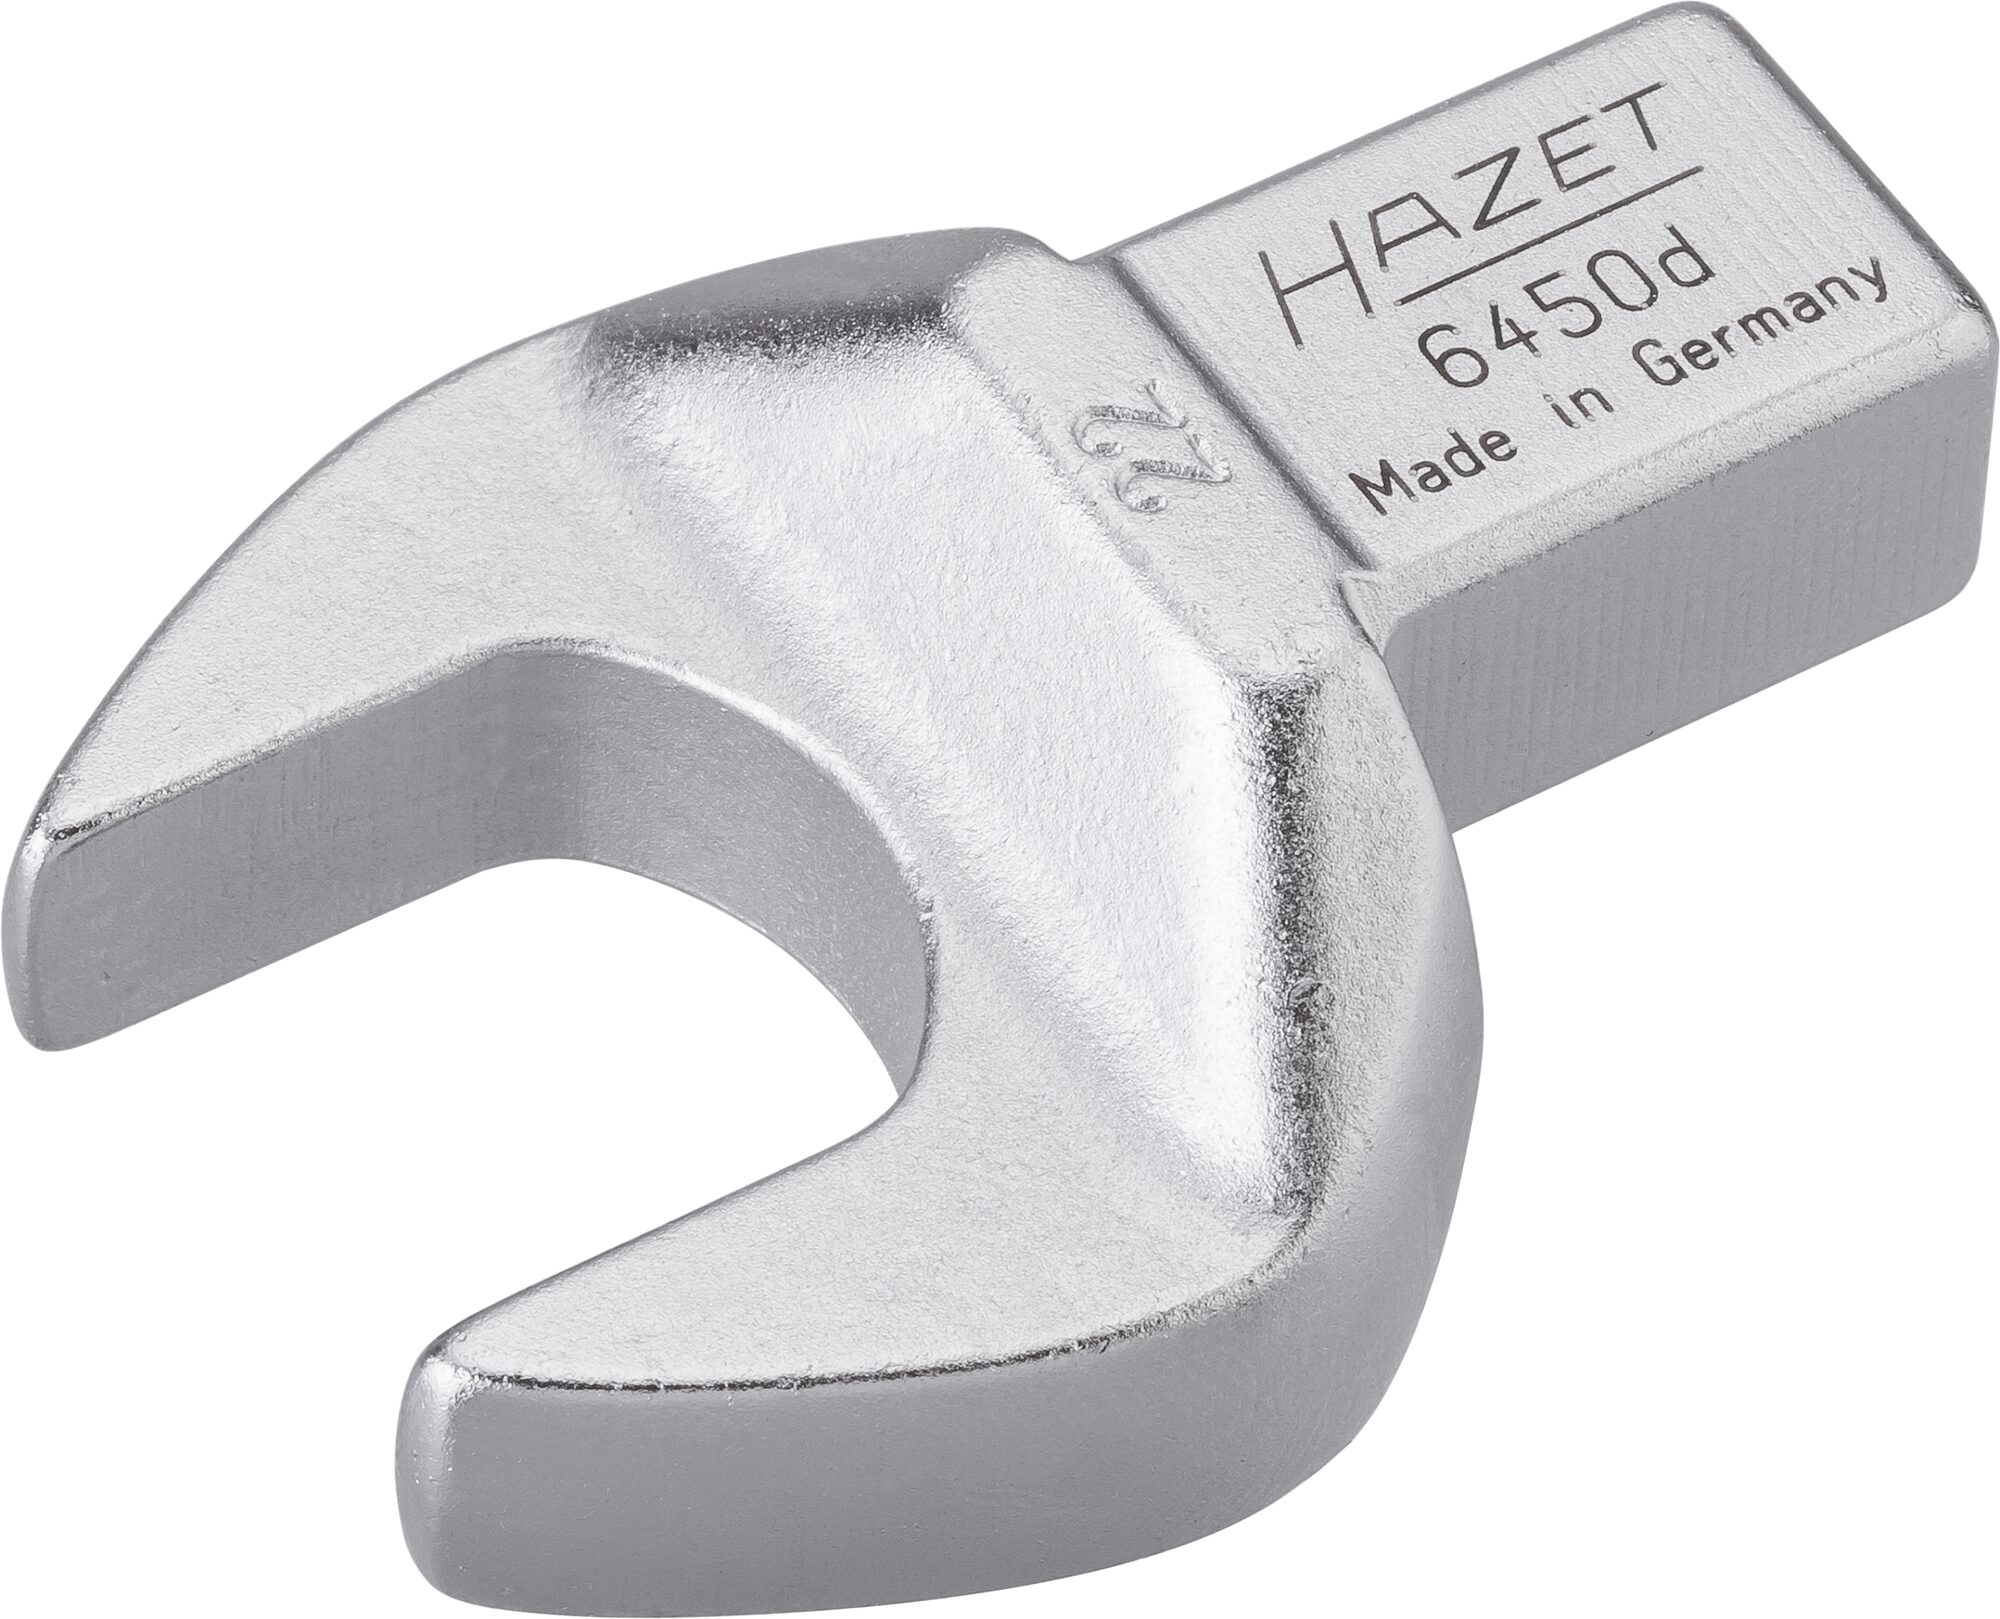 HAZET Einsteck-Maulschlüssel 6450D-22 · Einsteck-Vierkant 14 x 18 mm · Außen Sechskant Profil · 22 mm